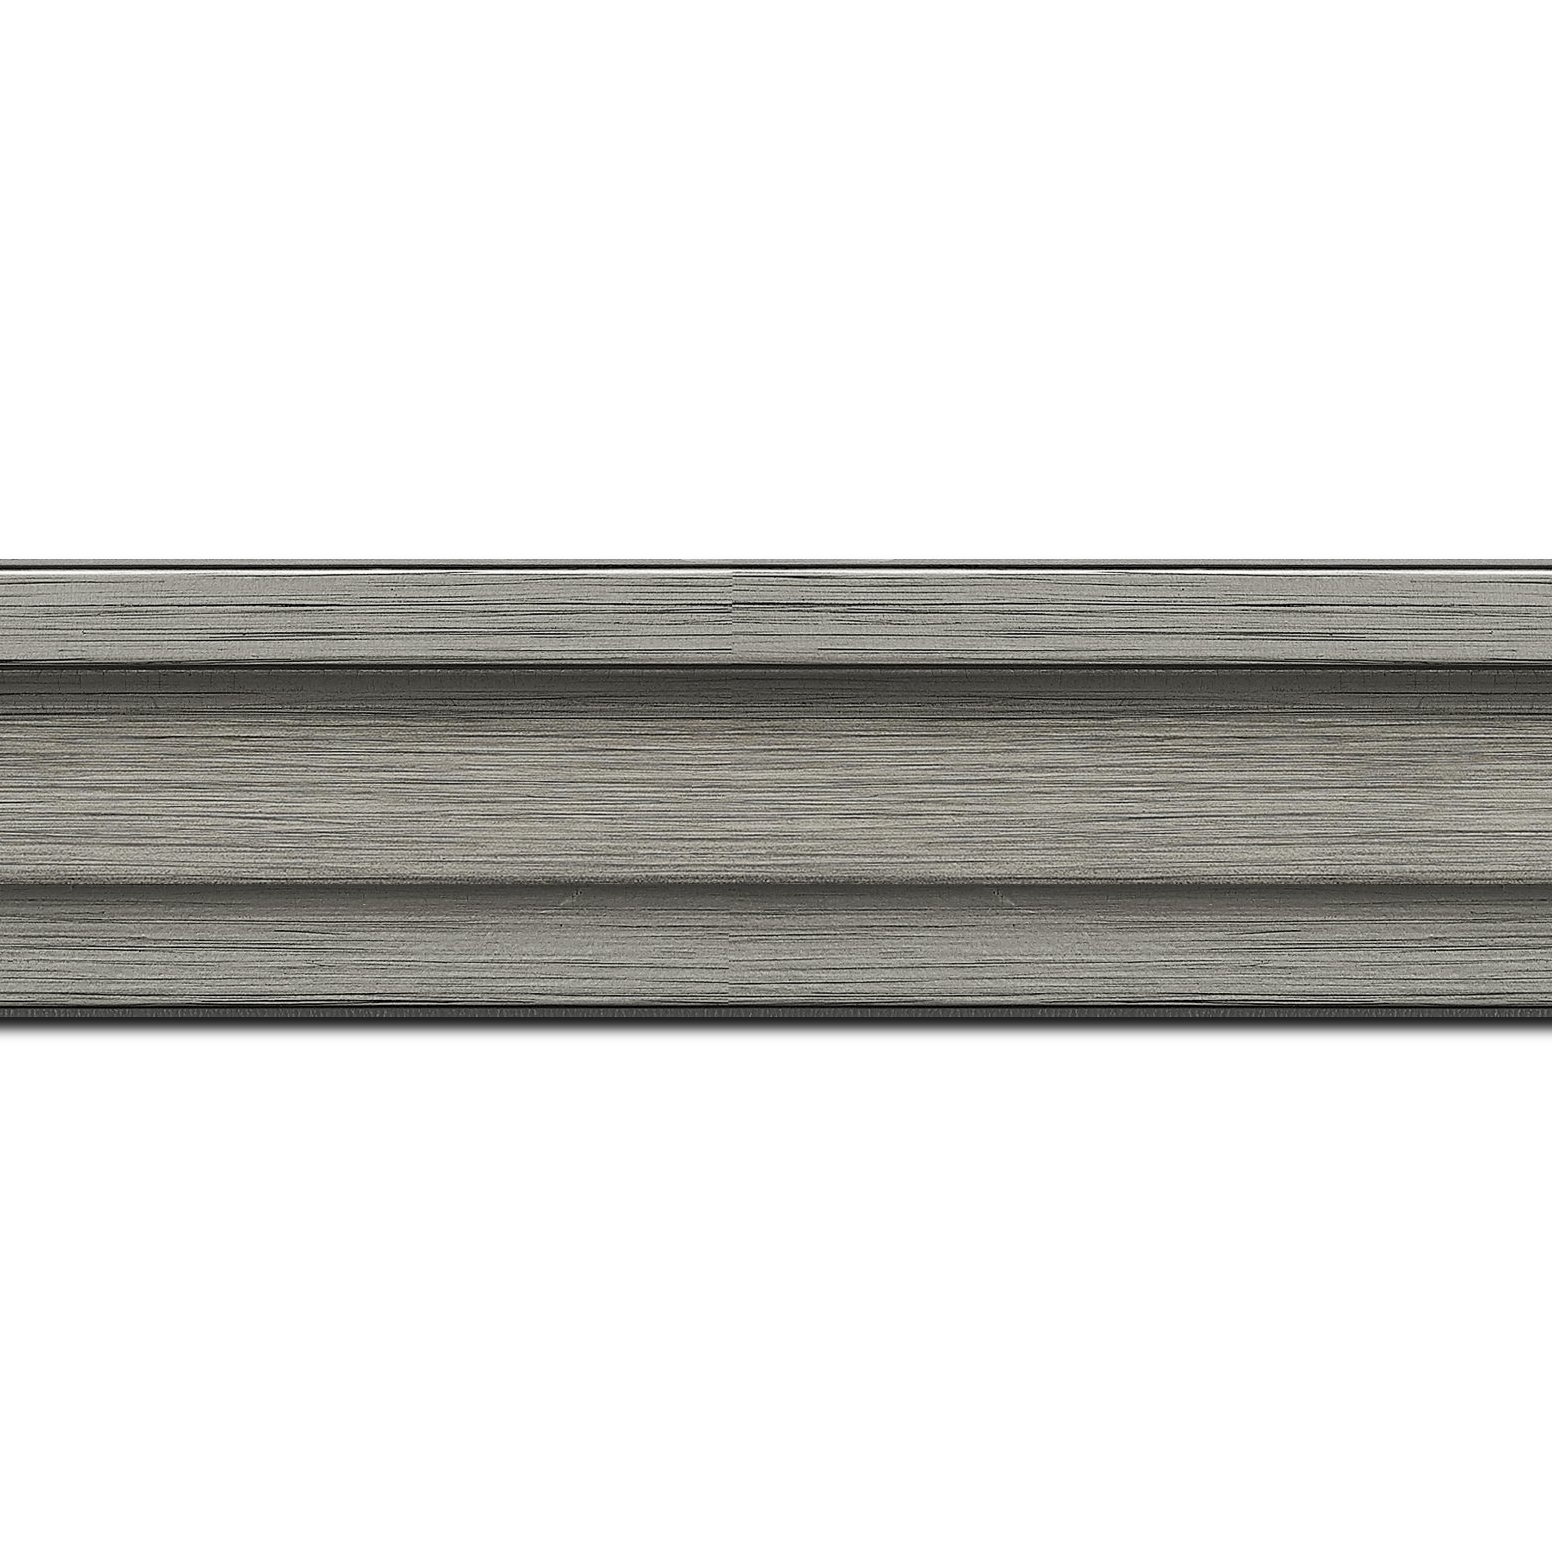 Pack par 12m, bois caisse américaine profil escalier largeur 4.4cm couleur plomb sur noir (spécialement conçu pour les châssis d'une épaisseur jusqu’à 2.5cm )(longueur baguette pouvant varier entre 2.40m et 3m selon arrivage des bois)